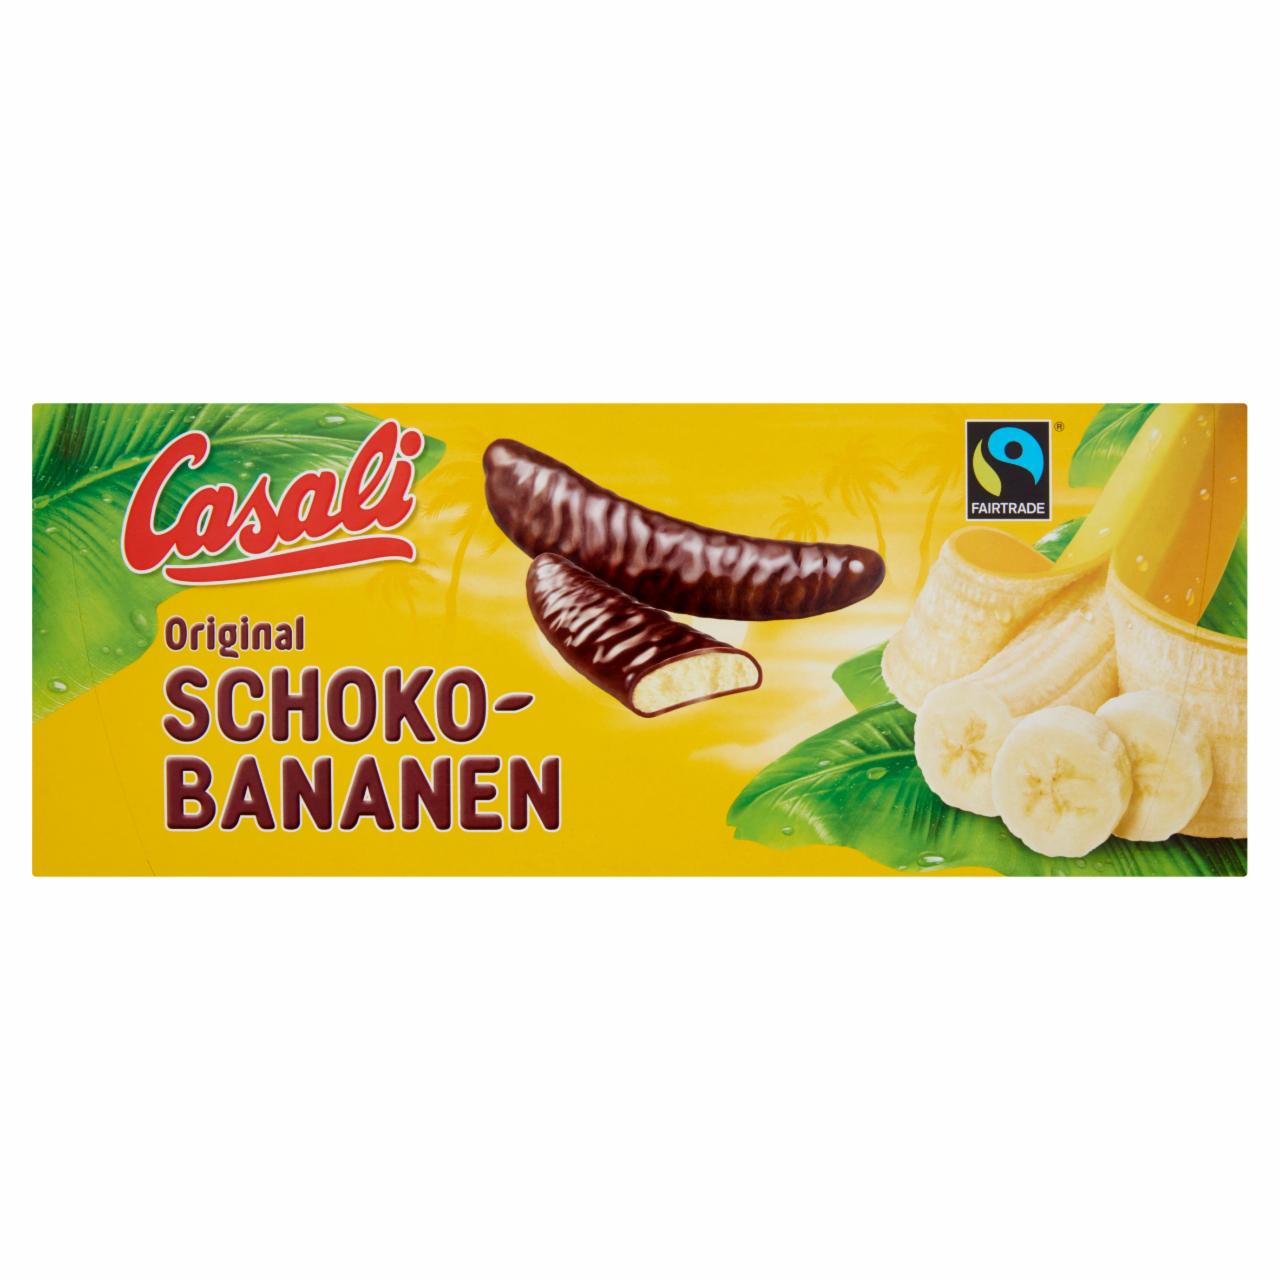 Képek - Casali Original habosított banánkrém csokoládéba mártva 300 g